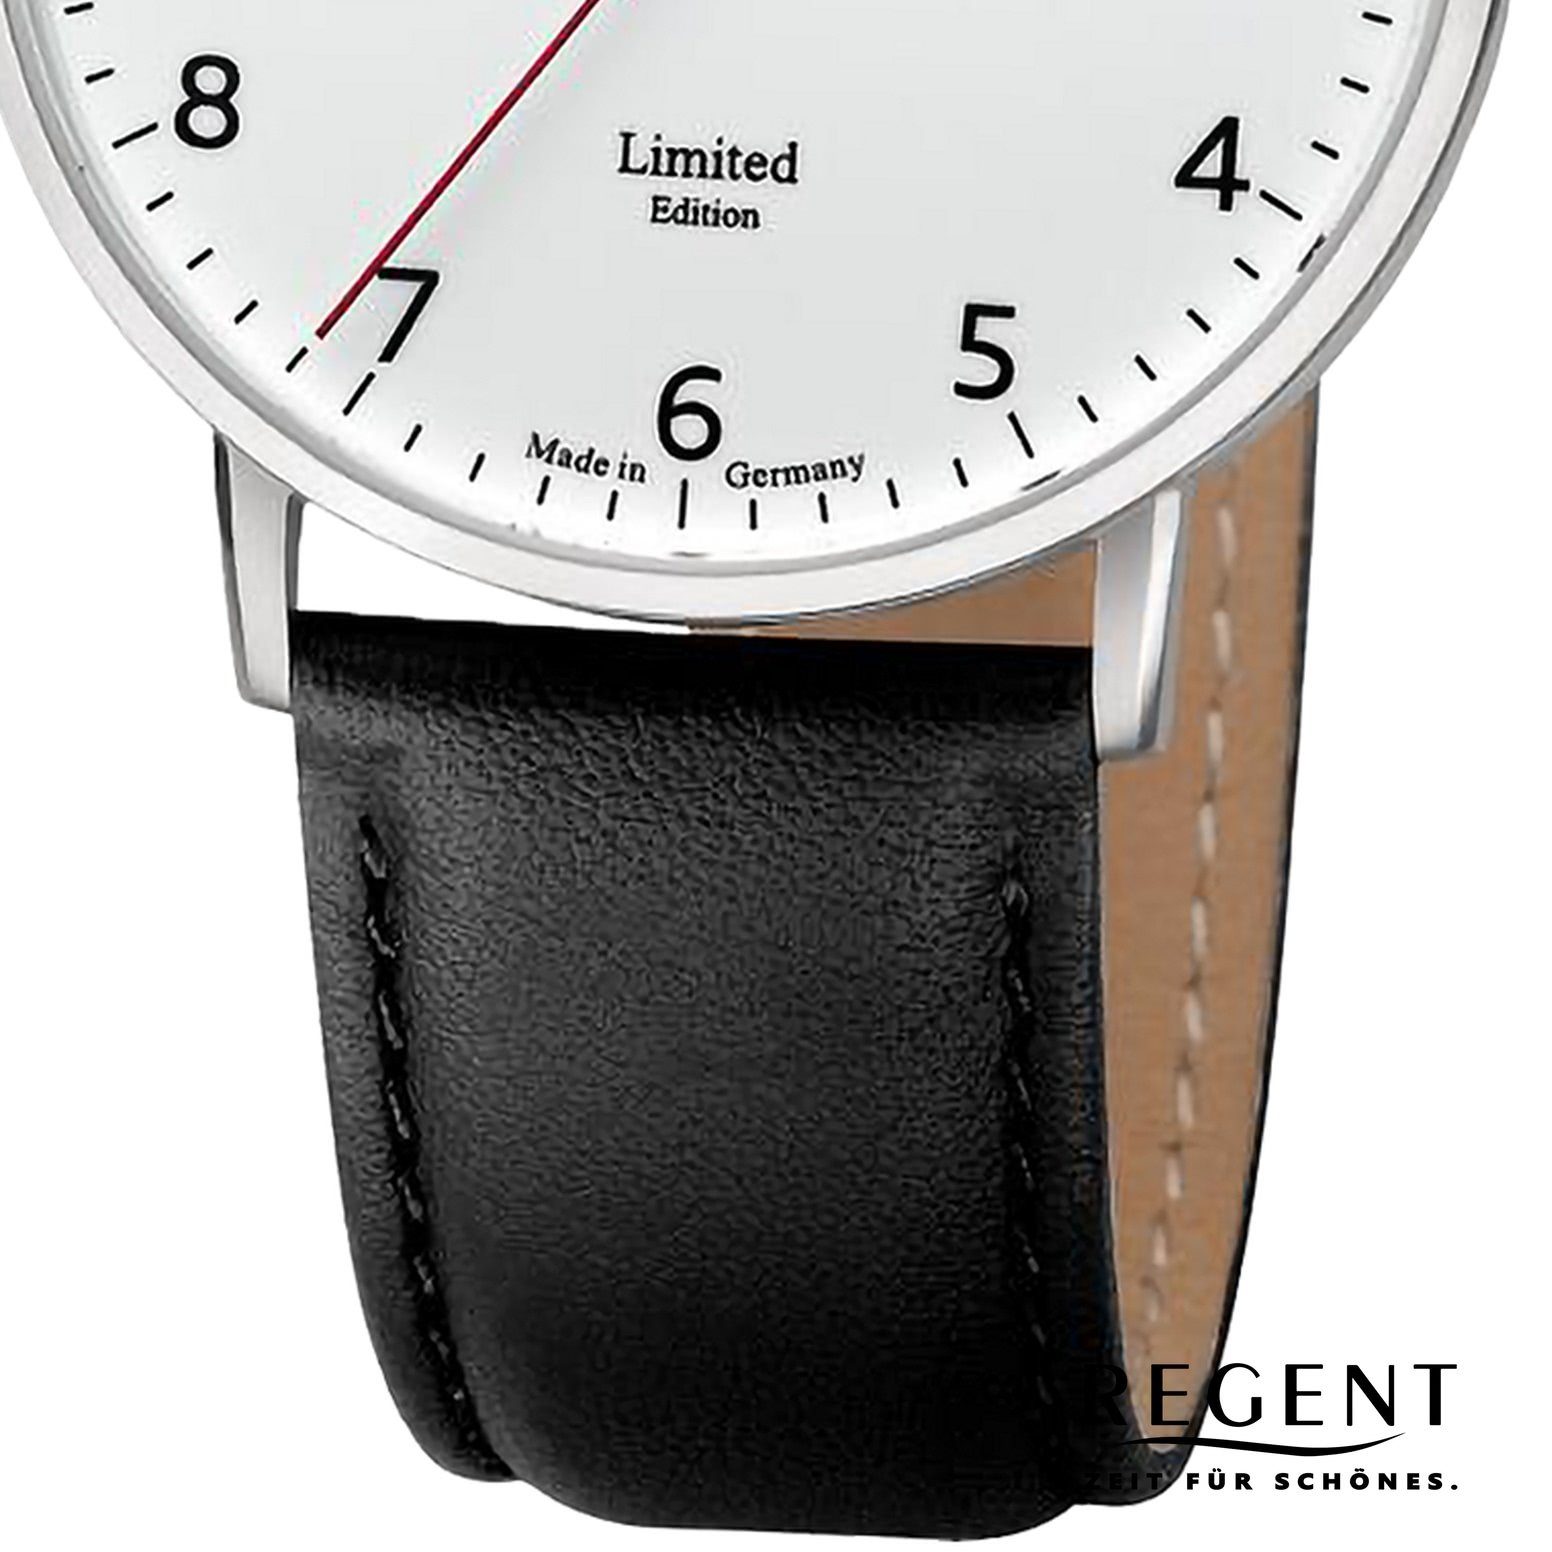 rund, Regent Armbanduhr (ca. Herren groß 39mm), Quarzuhr Armbanduhr extra Regent Herren Lederarmband Analog,